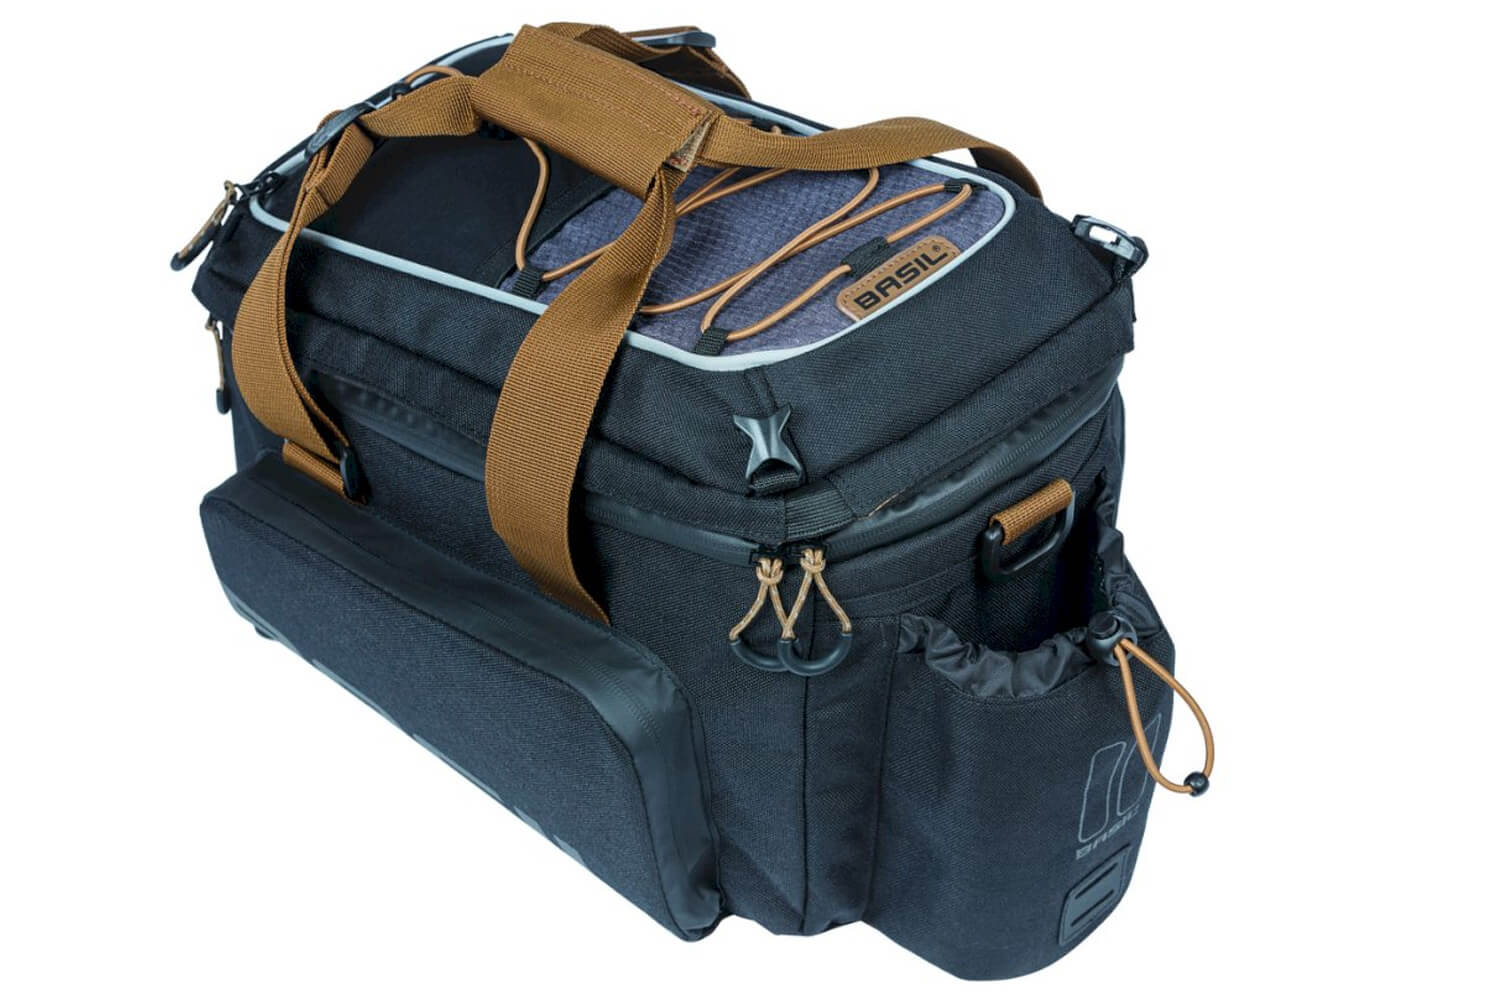 BASIL Gepäckträgertasche Miles Trunkbag XL Pro für MIK Gepäckträger  